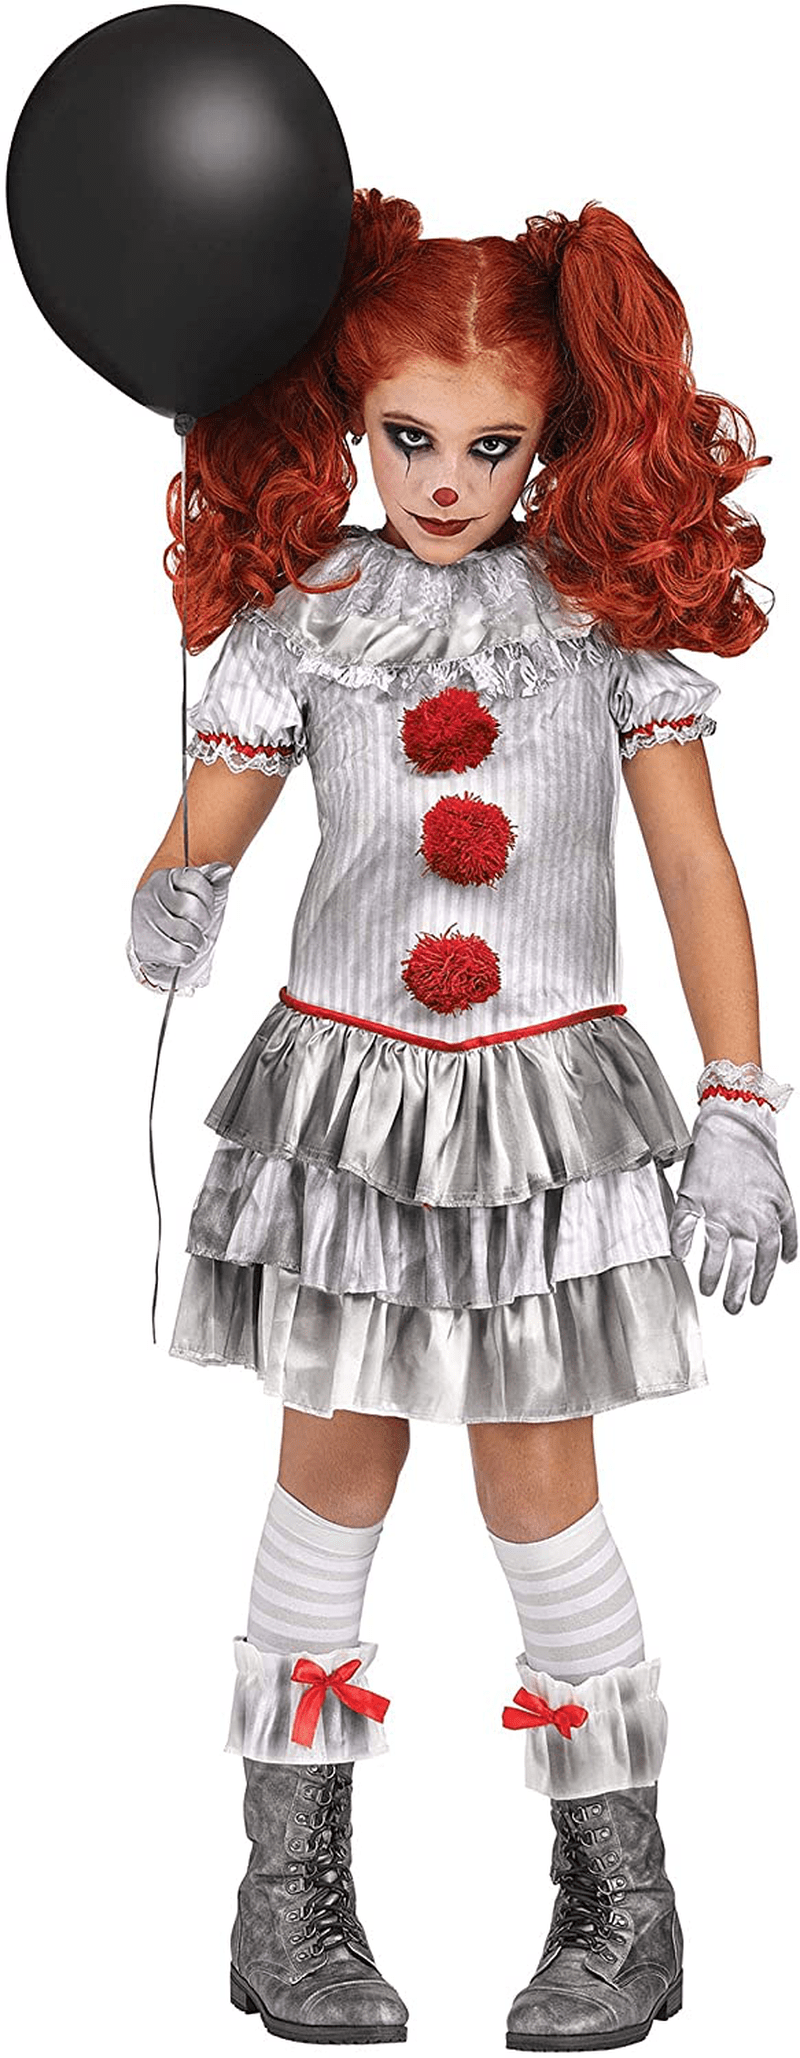 Carnevil Clown Costume for Girls